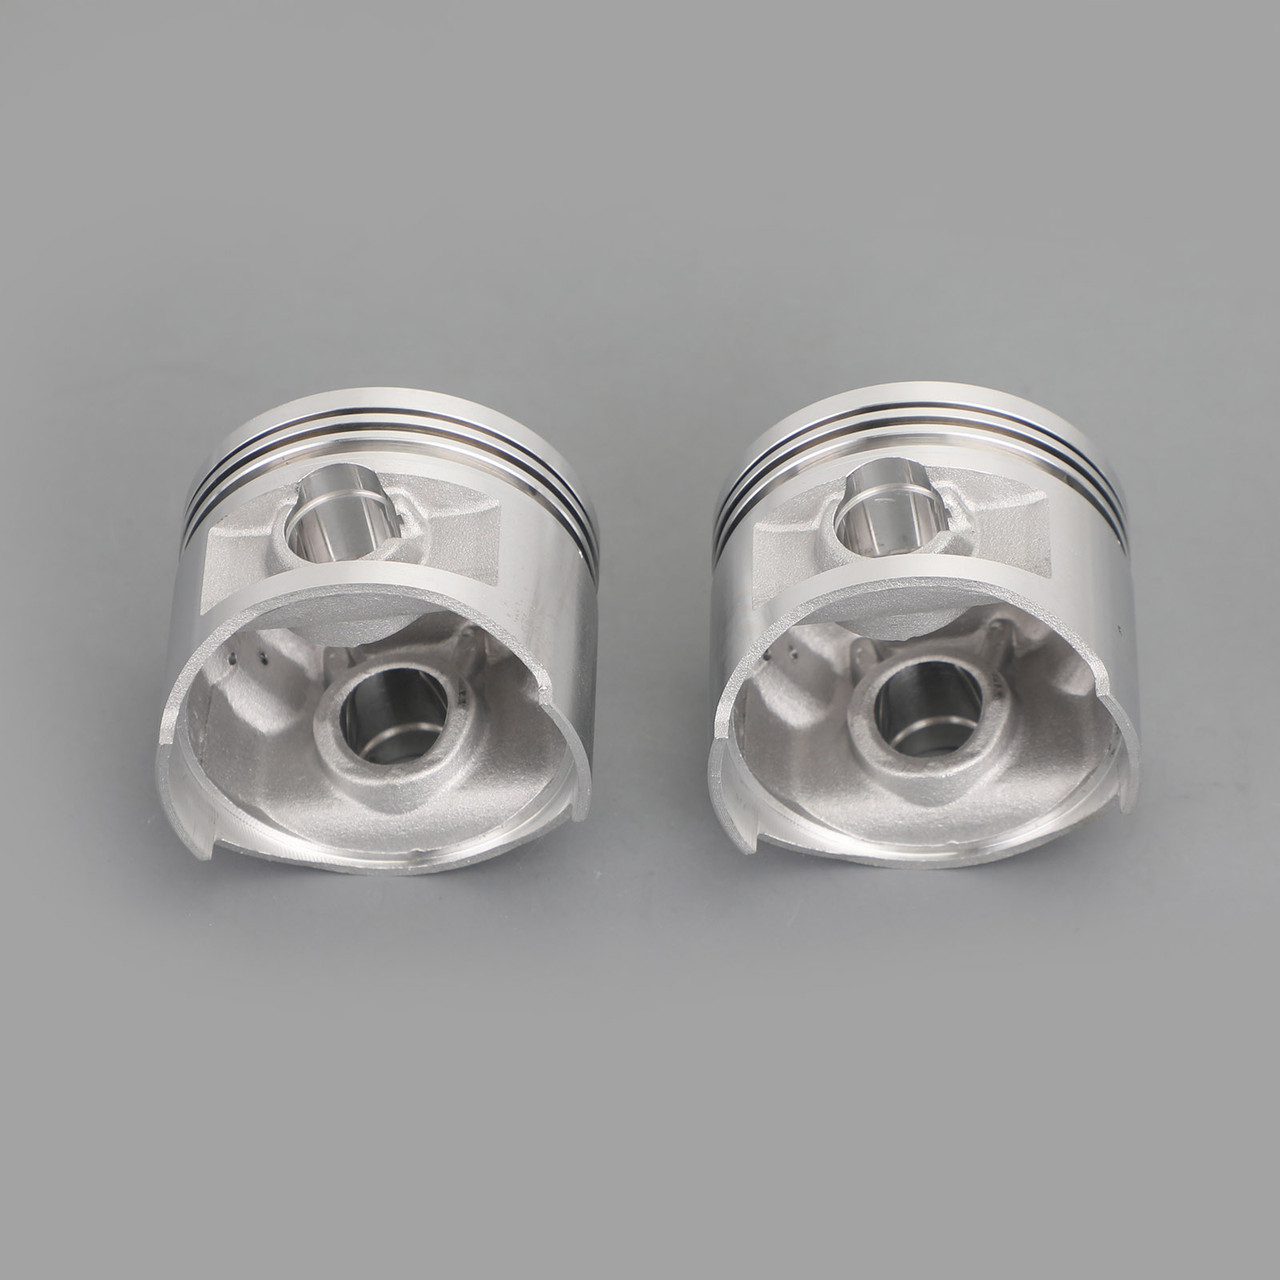 Piston Pin Ring Set STD Bore Size Fit For Yamaha XV250 V-Star 250 08-18 SRV250 Renaissa 96-97